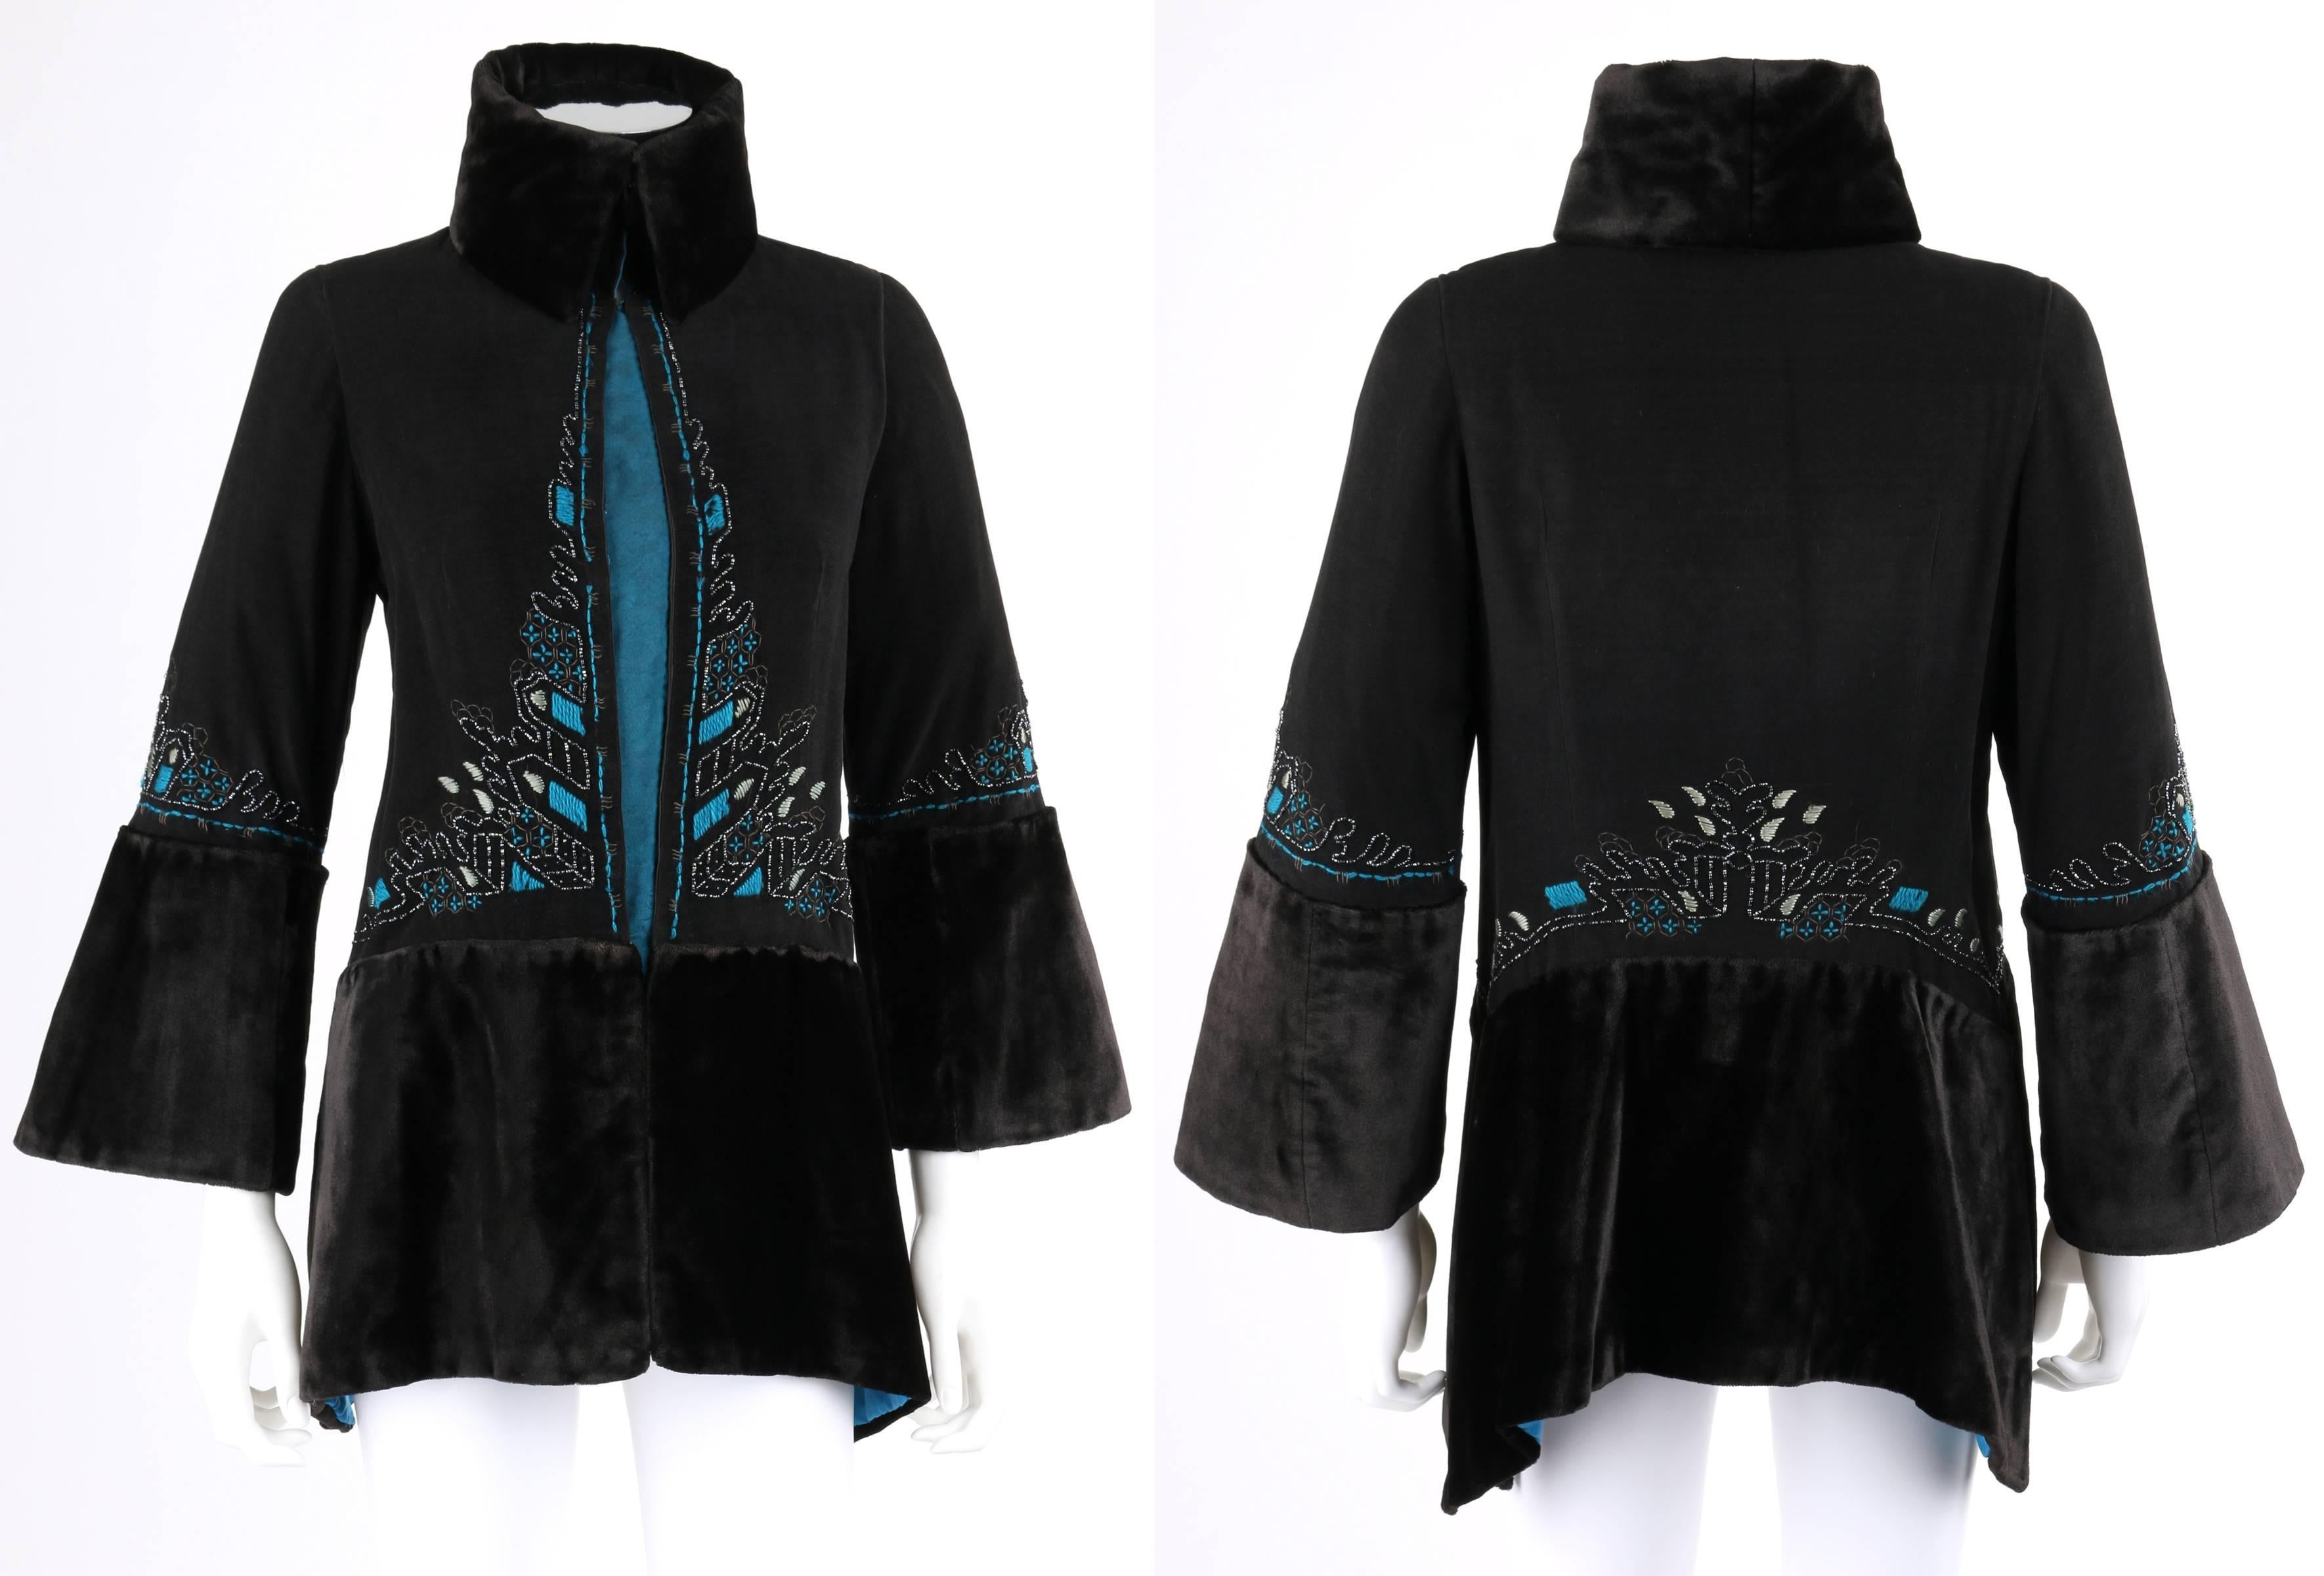 Vintage c.1910's Edwardian Couture ein von einer Art schwarz & Pfau blau / teal Wolle bestickte Jacke. Bestickte Details entlang der vorderen Mitte, der Taille und den Ärmeln in Teal-Tönen usw., mit schwarzer Perlenverzierung. 3/4 lange Glockenärmel